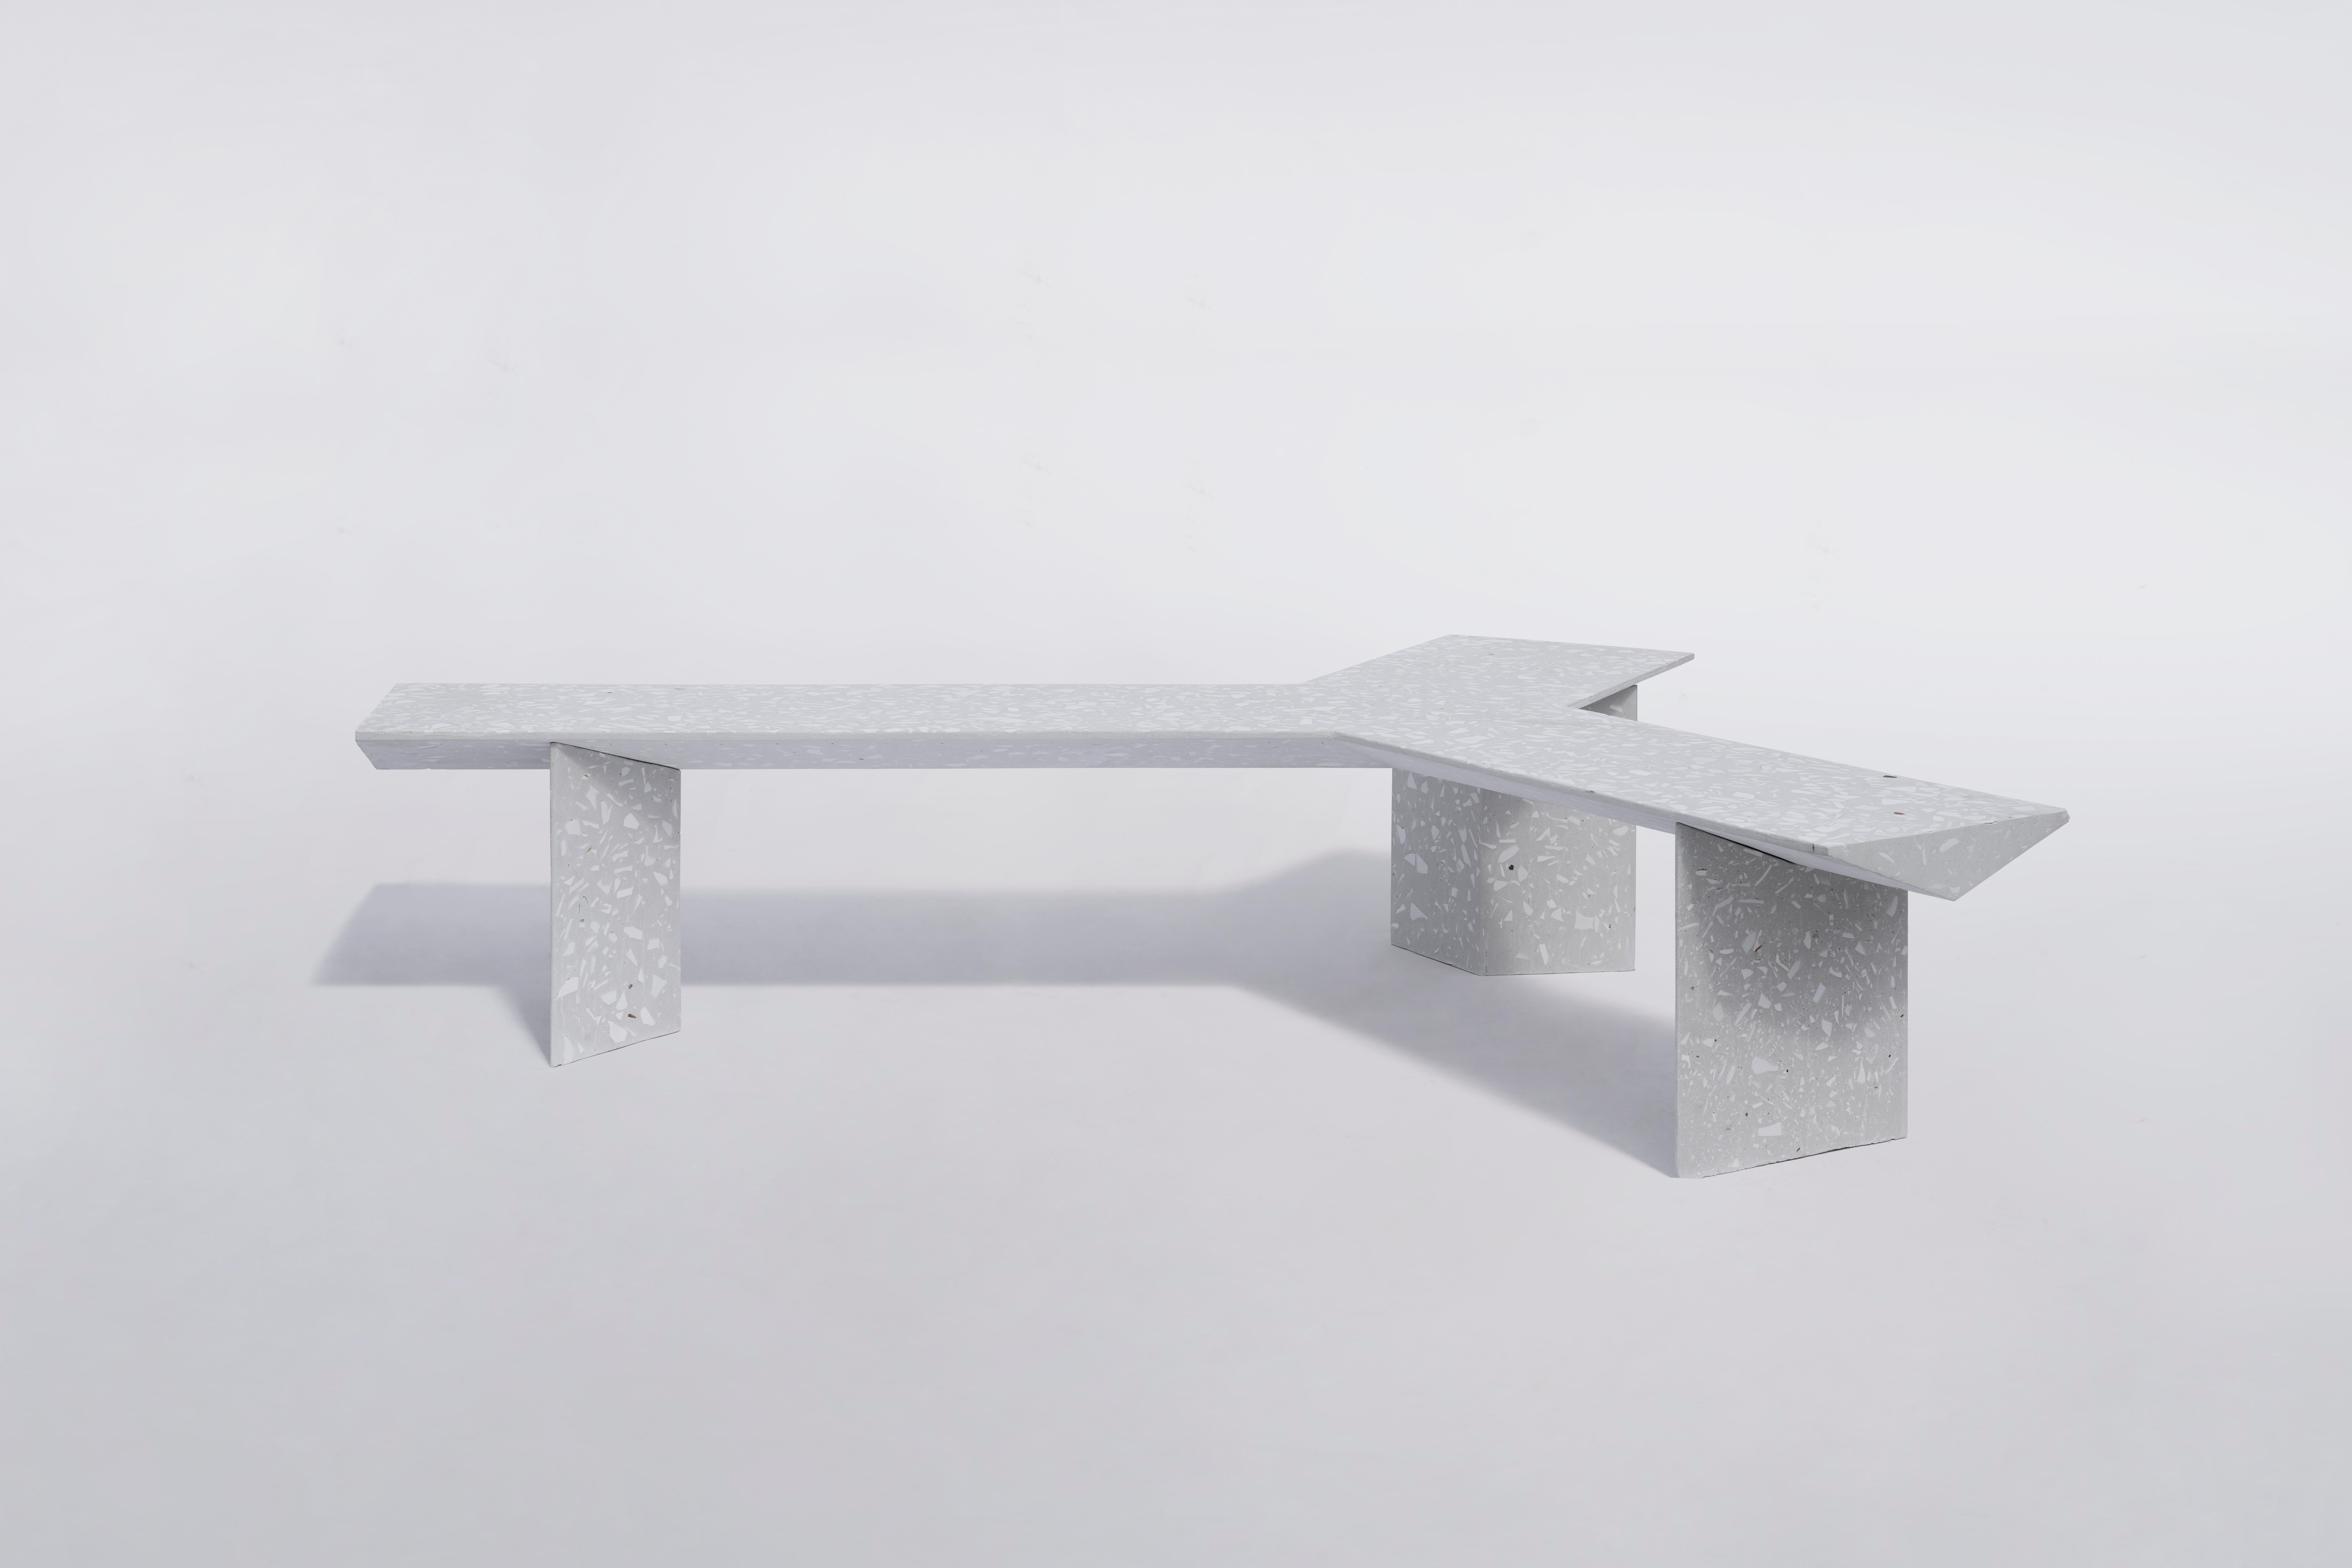 LIANG 2 Sitzbank von Bentu Design

Abfälle aus Beton und Keramik / Terrazzo
2045×1700×445 mm 
206 kg
Verwendung im Freien: OK

Modulbank: LIANG 1 und LIANG 2 zu einer skulpturalen Bank zusammensetzen.

--
Bentu Desing ist ein in Guangzhou